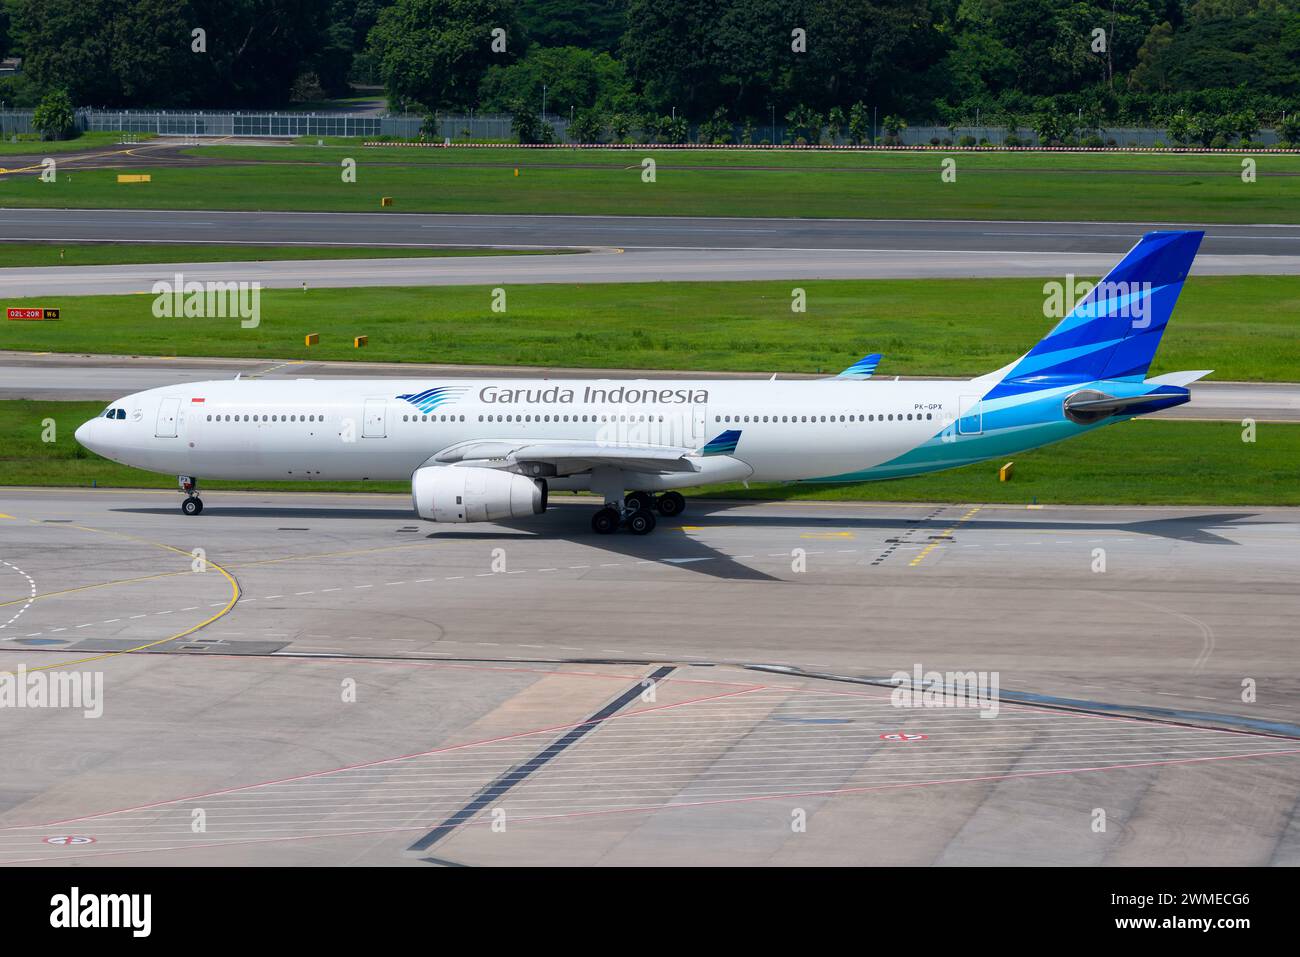 Garuda Indonesia Airlines Airbus A330 Flugzeuge im Rollverkehr. Flugzeug A330-300 der indonesischen Fluggesellschaft Garuda Indonesia. Flugzeug A333. Stockfoto